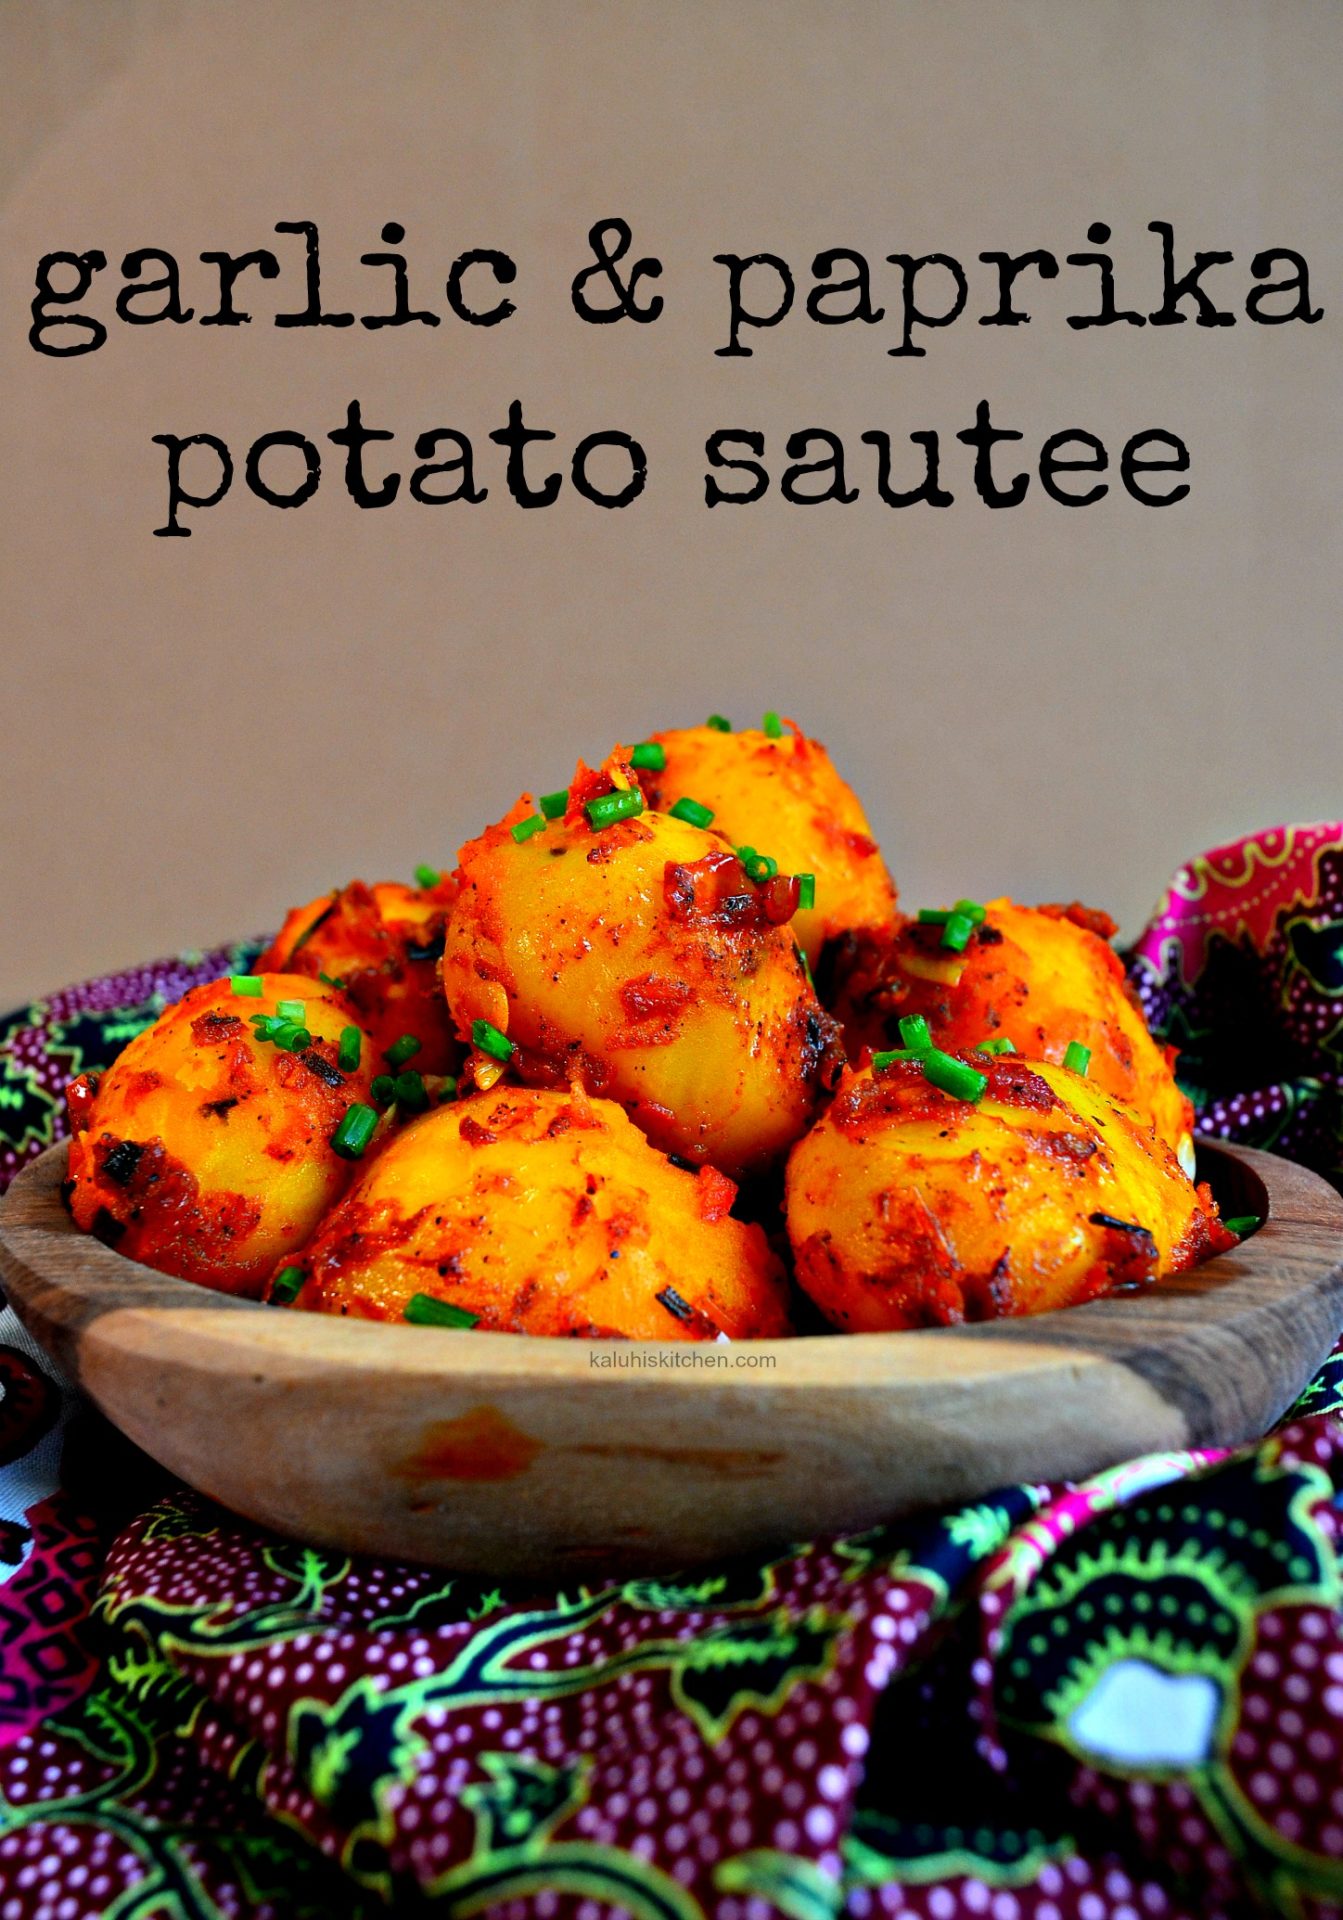 garlic and paprika potato sautee_potato recipes_how to make potatoes delicious_best kenyan food blogs_top kenyan food blog_kaluhiskitchen.com